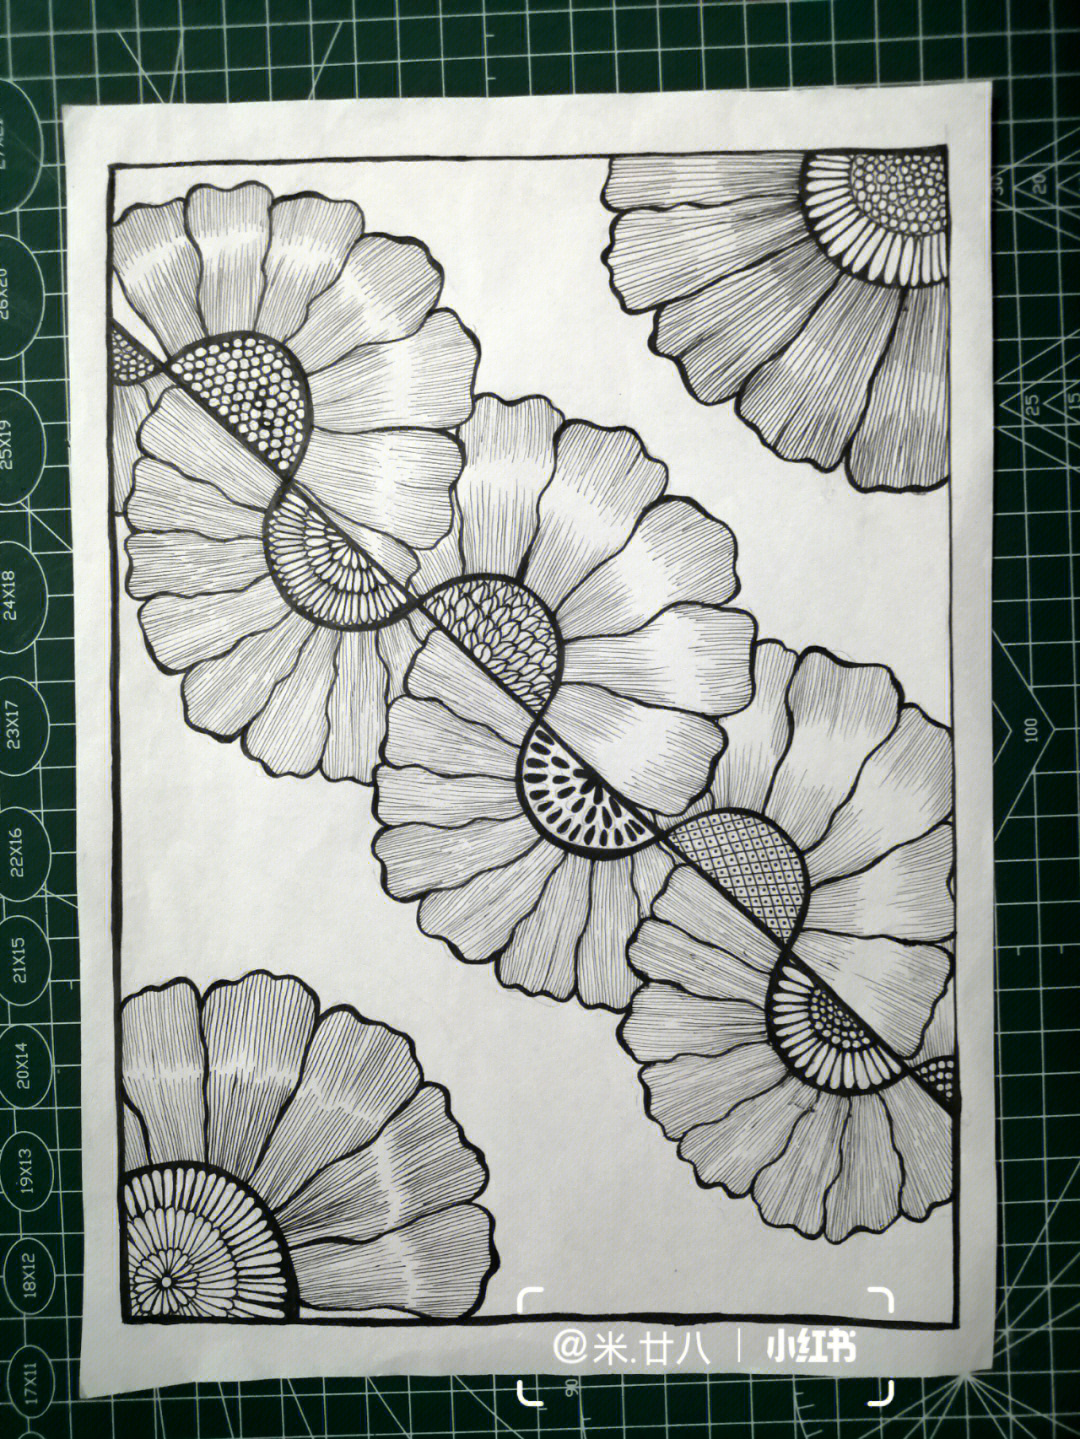 黑白线描临摹控笔训练花朵禅绕画